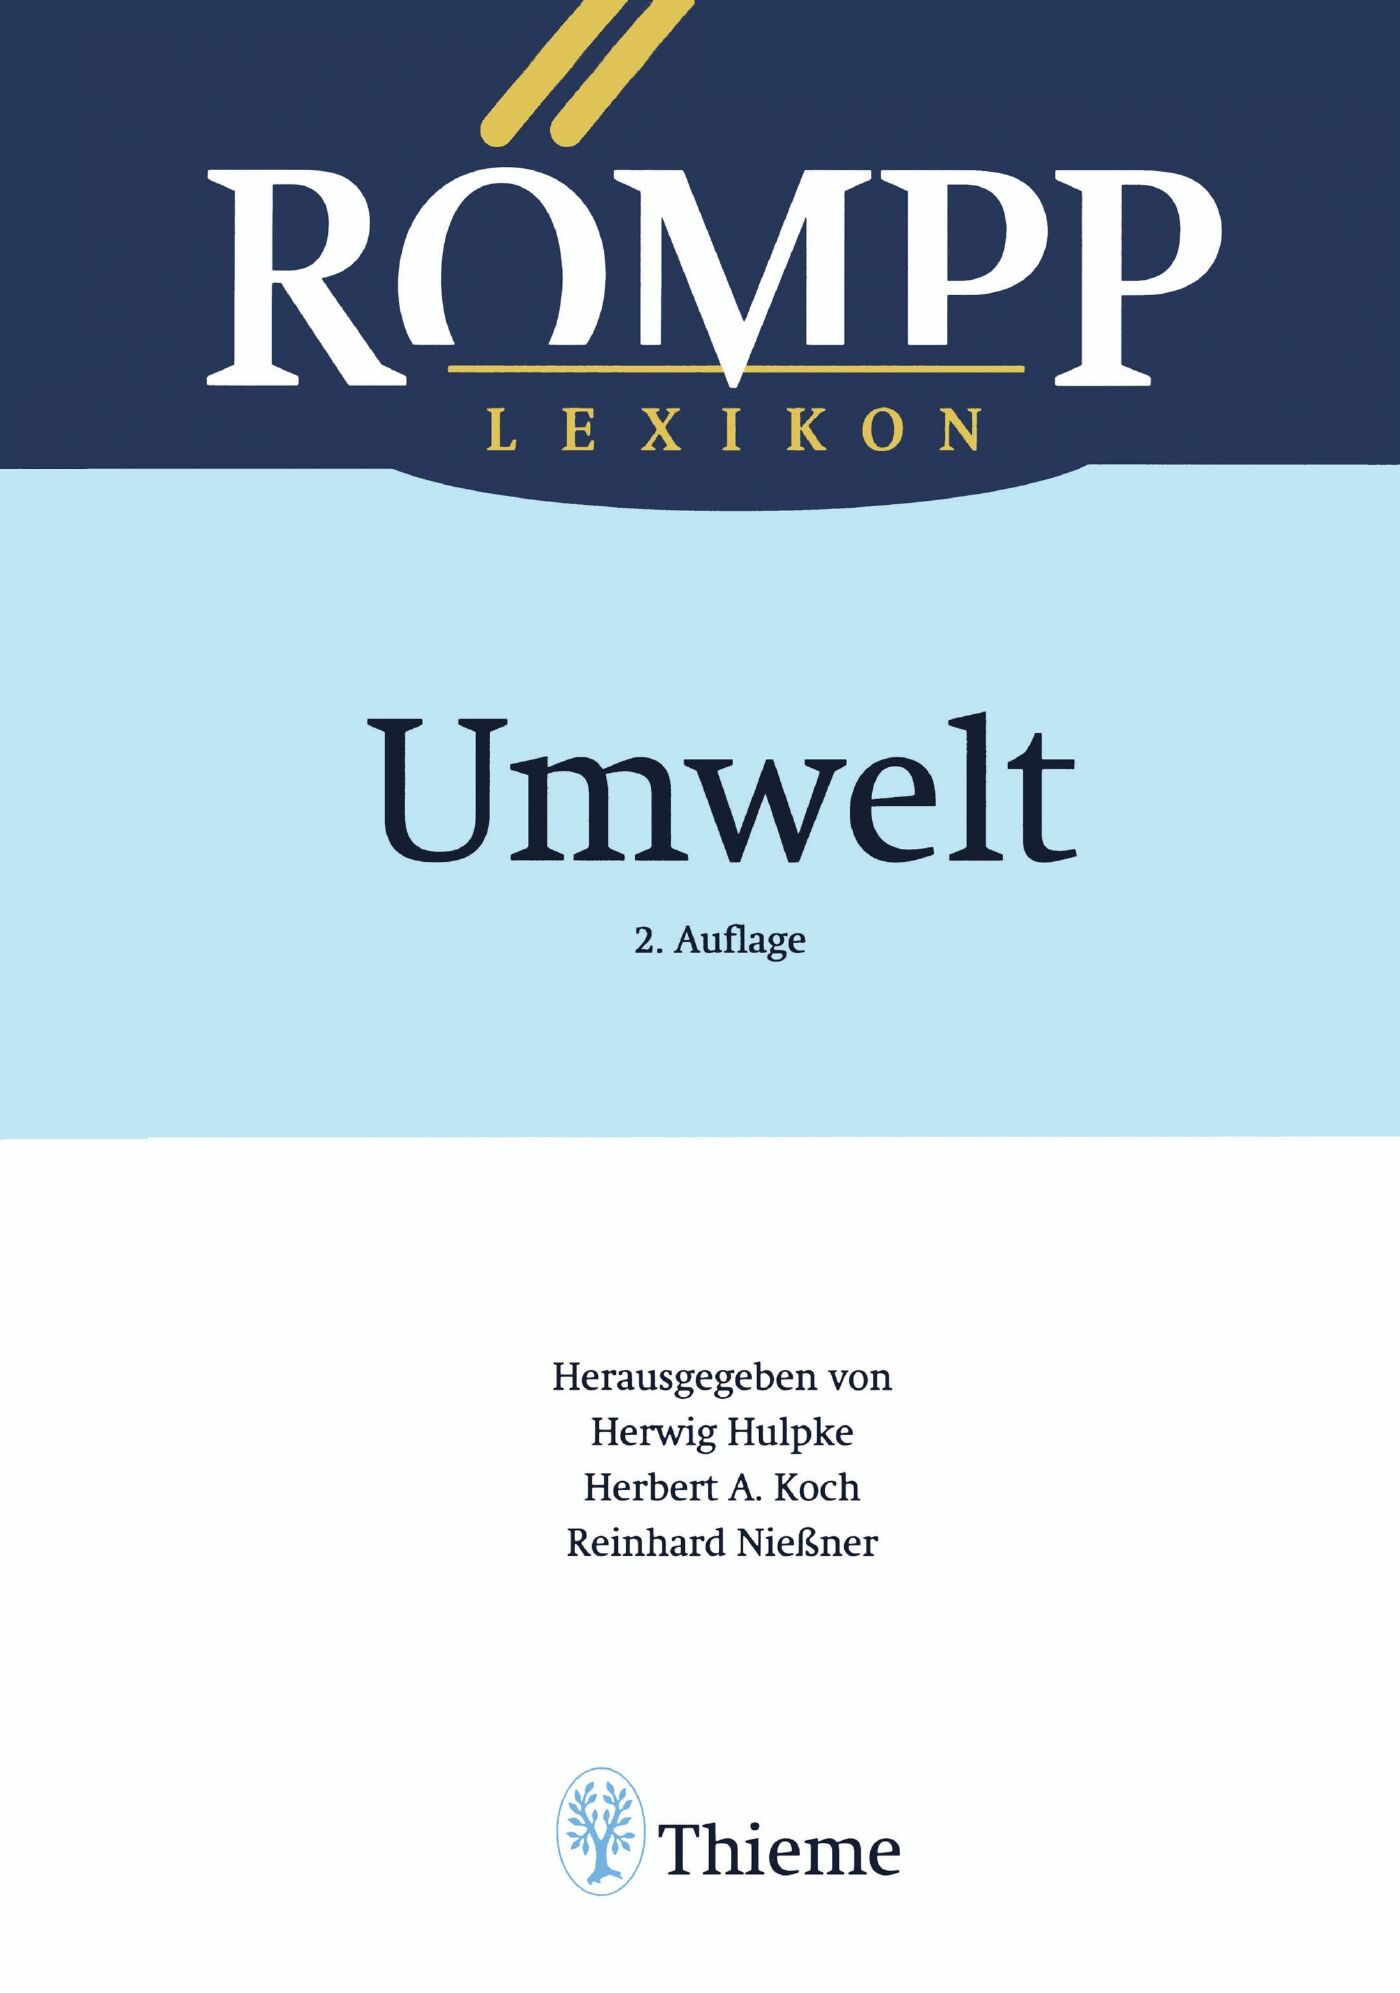 RÖMPP Lexikon Umwelt, 2. Auflage, 2000, 9783131793423